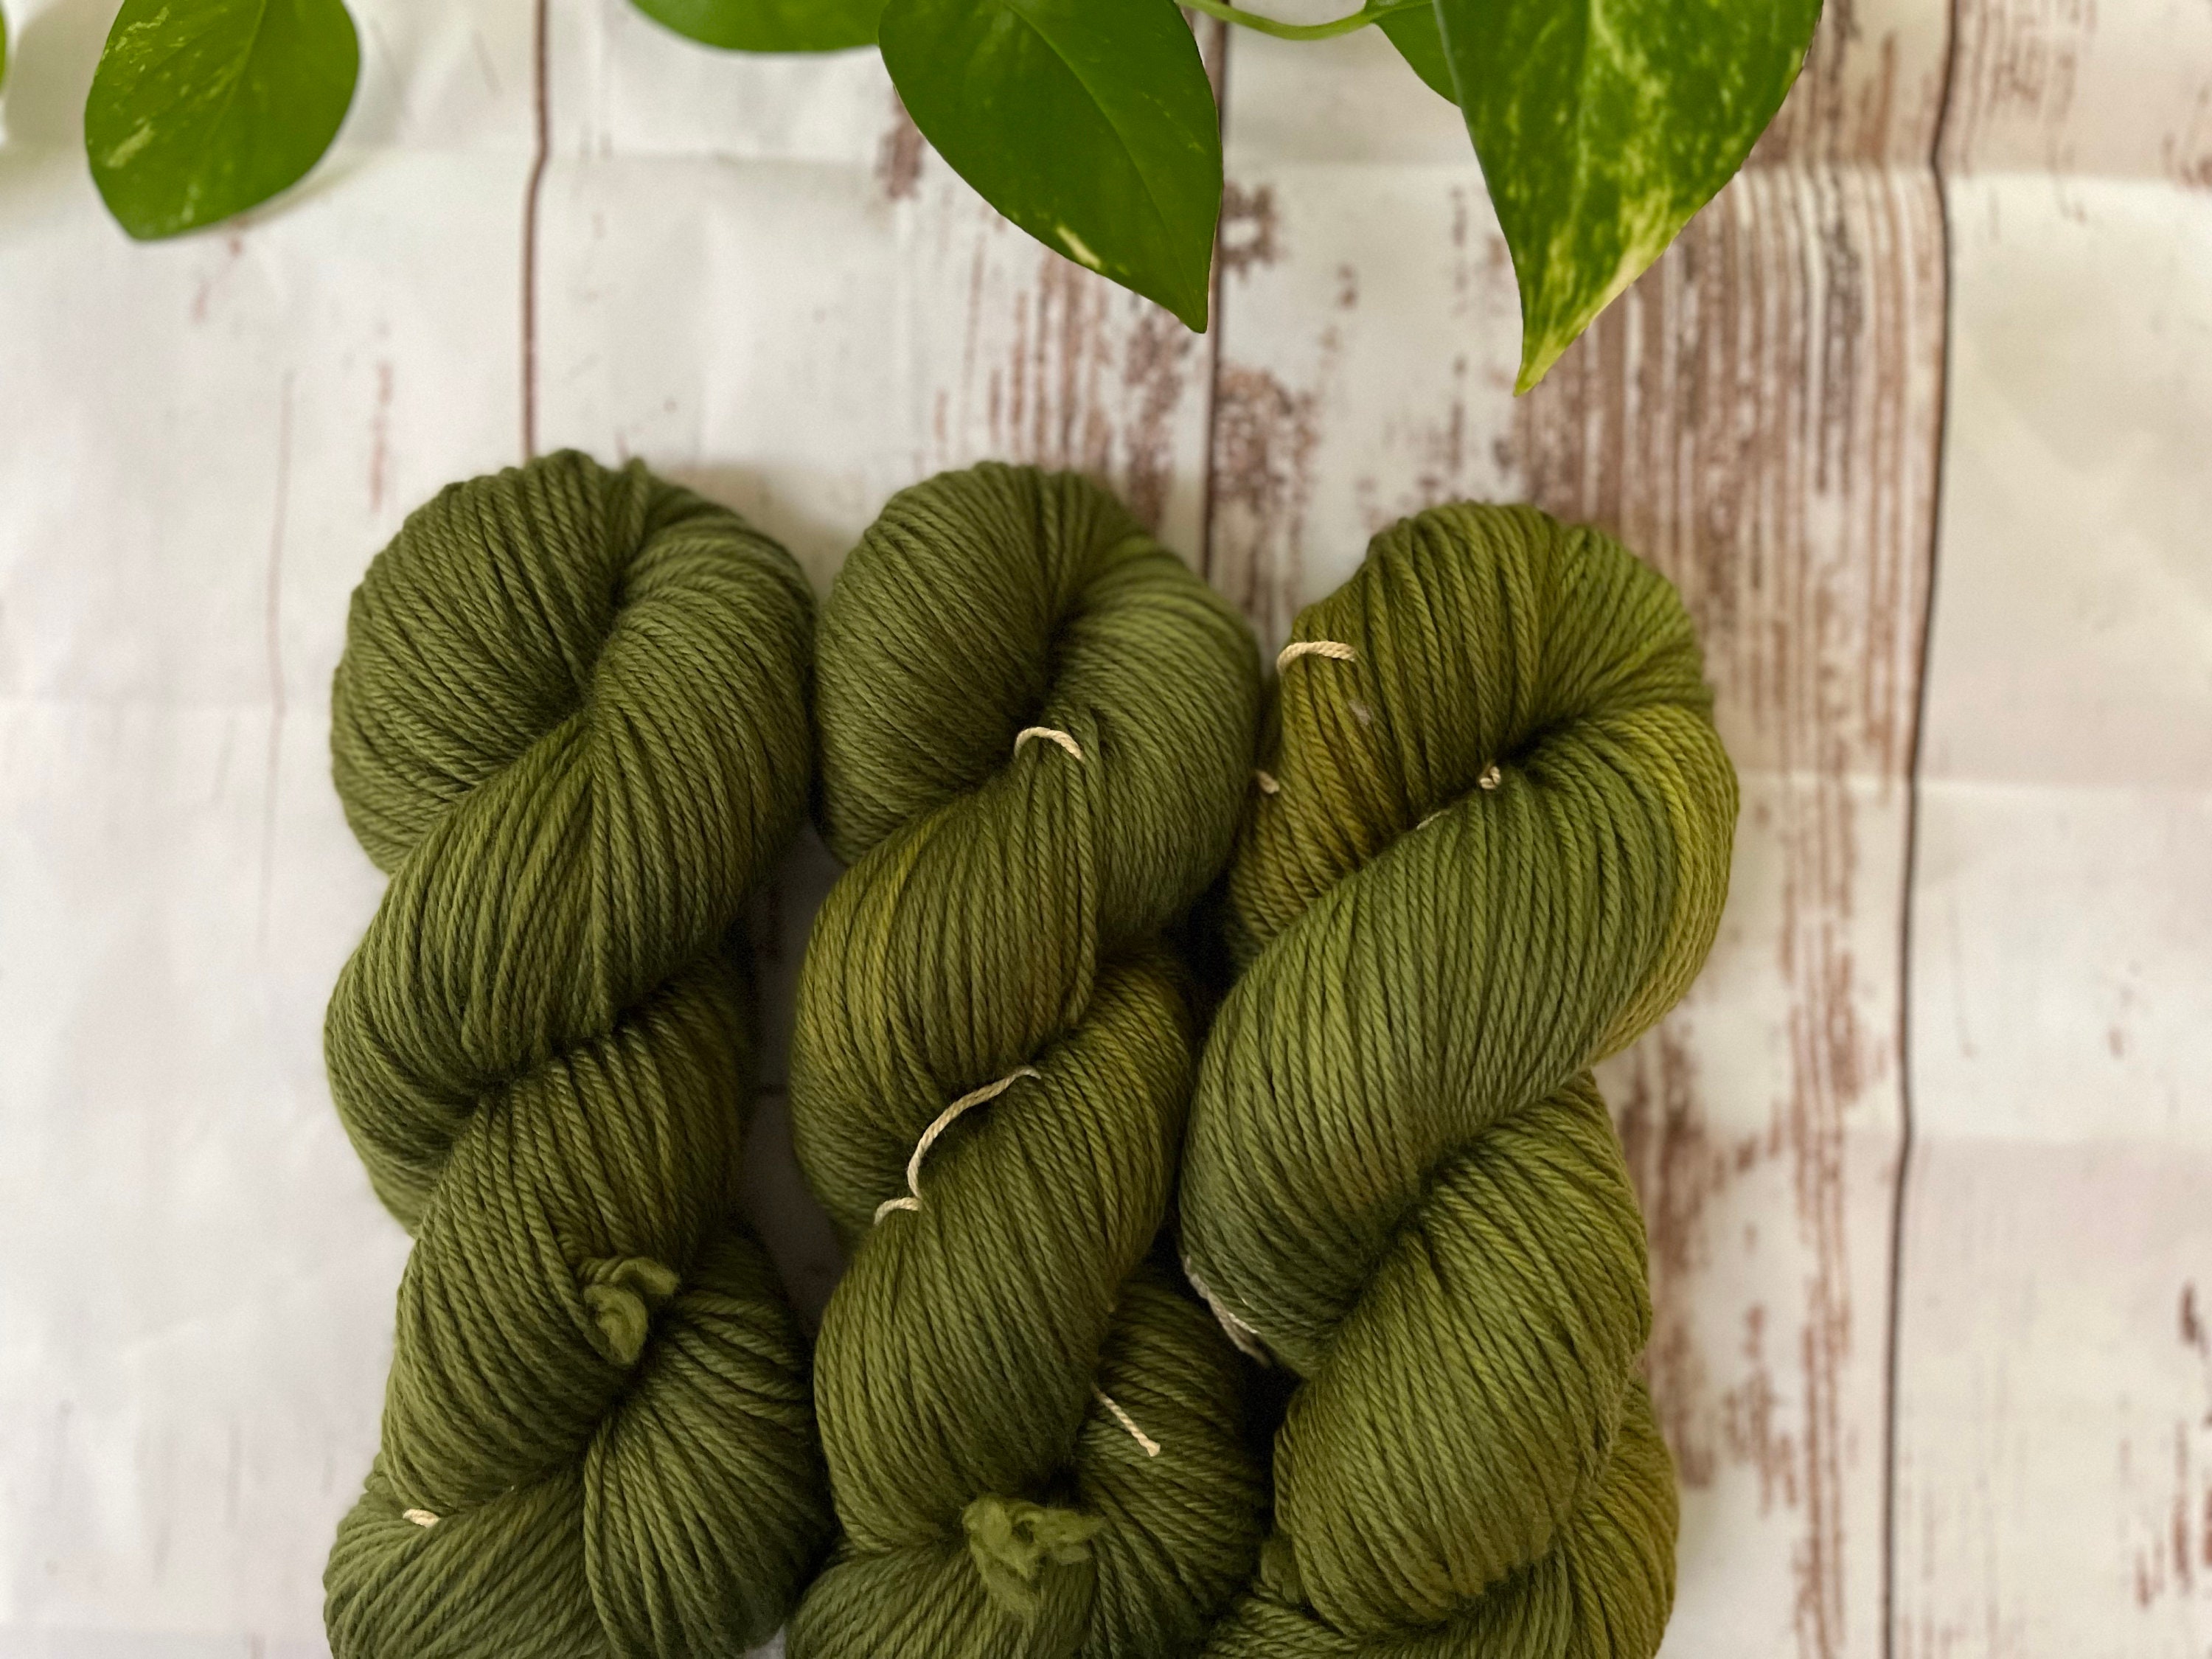 Tshirt Crochet Yarn. Yarn for Bags, Chunky Yarn, Bulky Yarn. Basket Yarn,  Cotton Yarn, Green Moss Color 7-9 or 5-7 Mm Thickness 